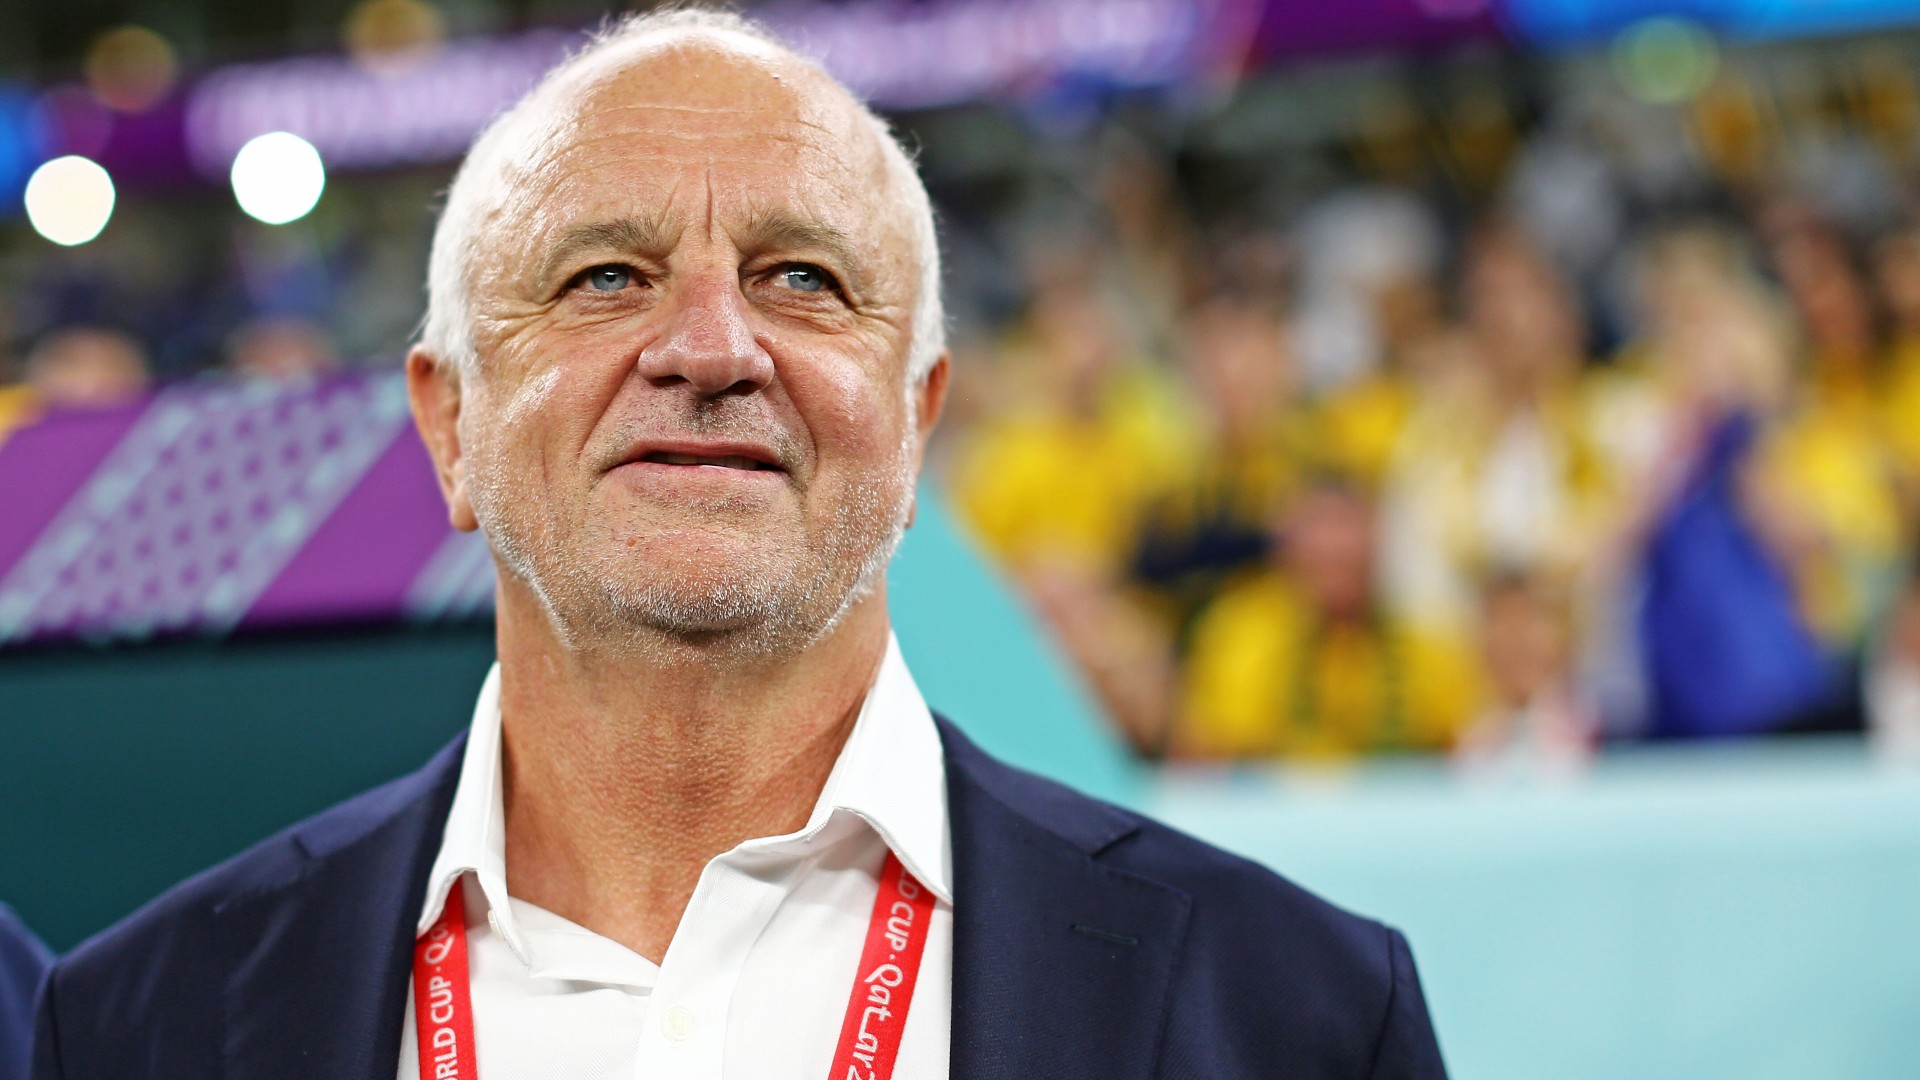 L’entraîneur des Socceroos, Graham Arnold, confirme la santé d’Ajdin Hrustic avant le match contre la Tunisie